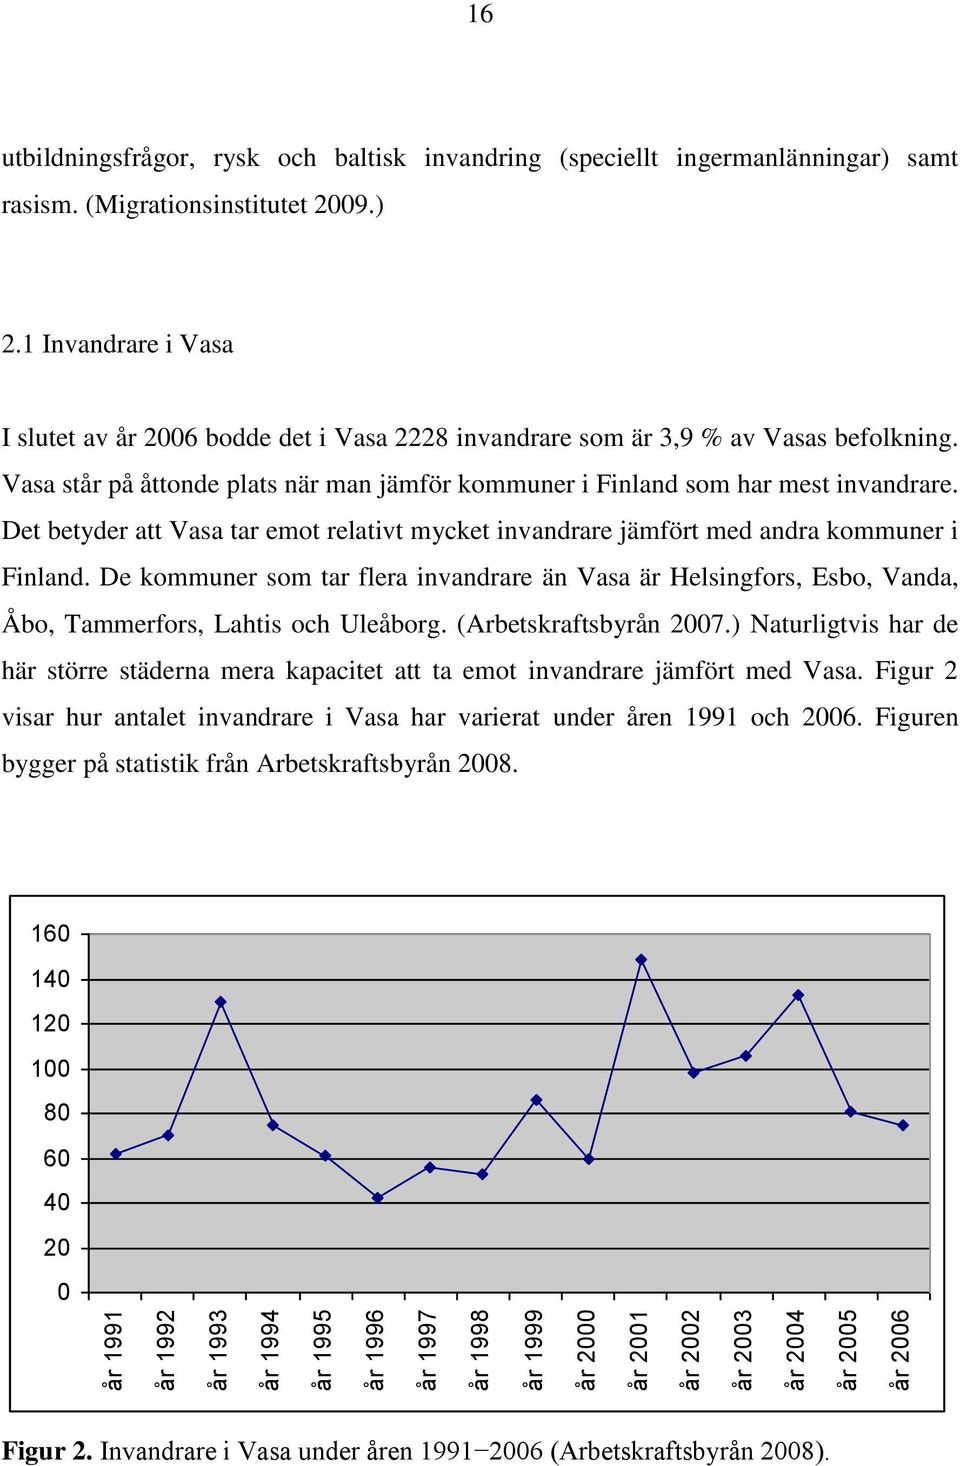 Vasa står på åttonde plats när man jämför kommuner i Finland som har mest invandrare. Det betyder att Vasa tar emot relativt mycket invandrare jämfört med andra kommuner i Finland.